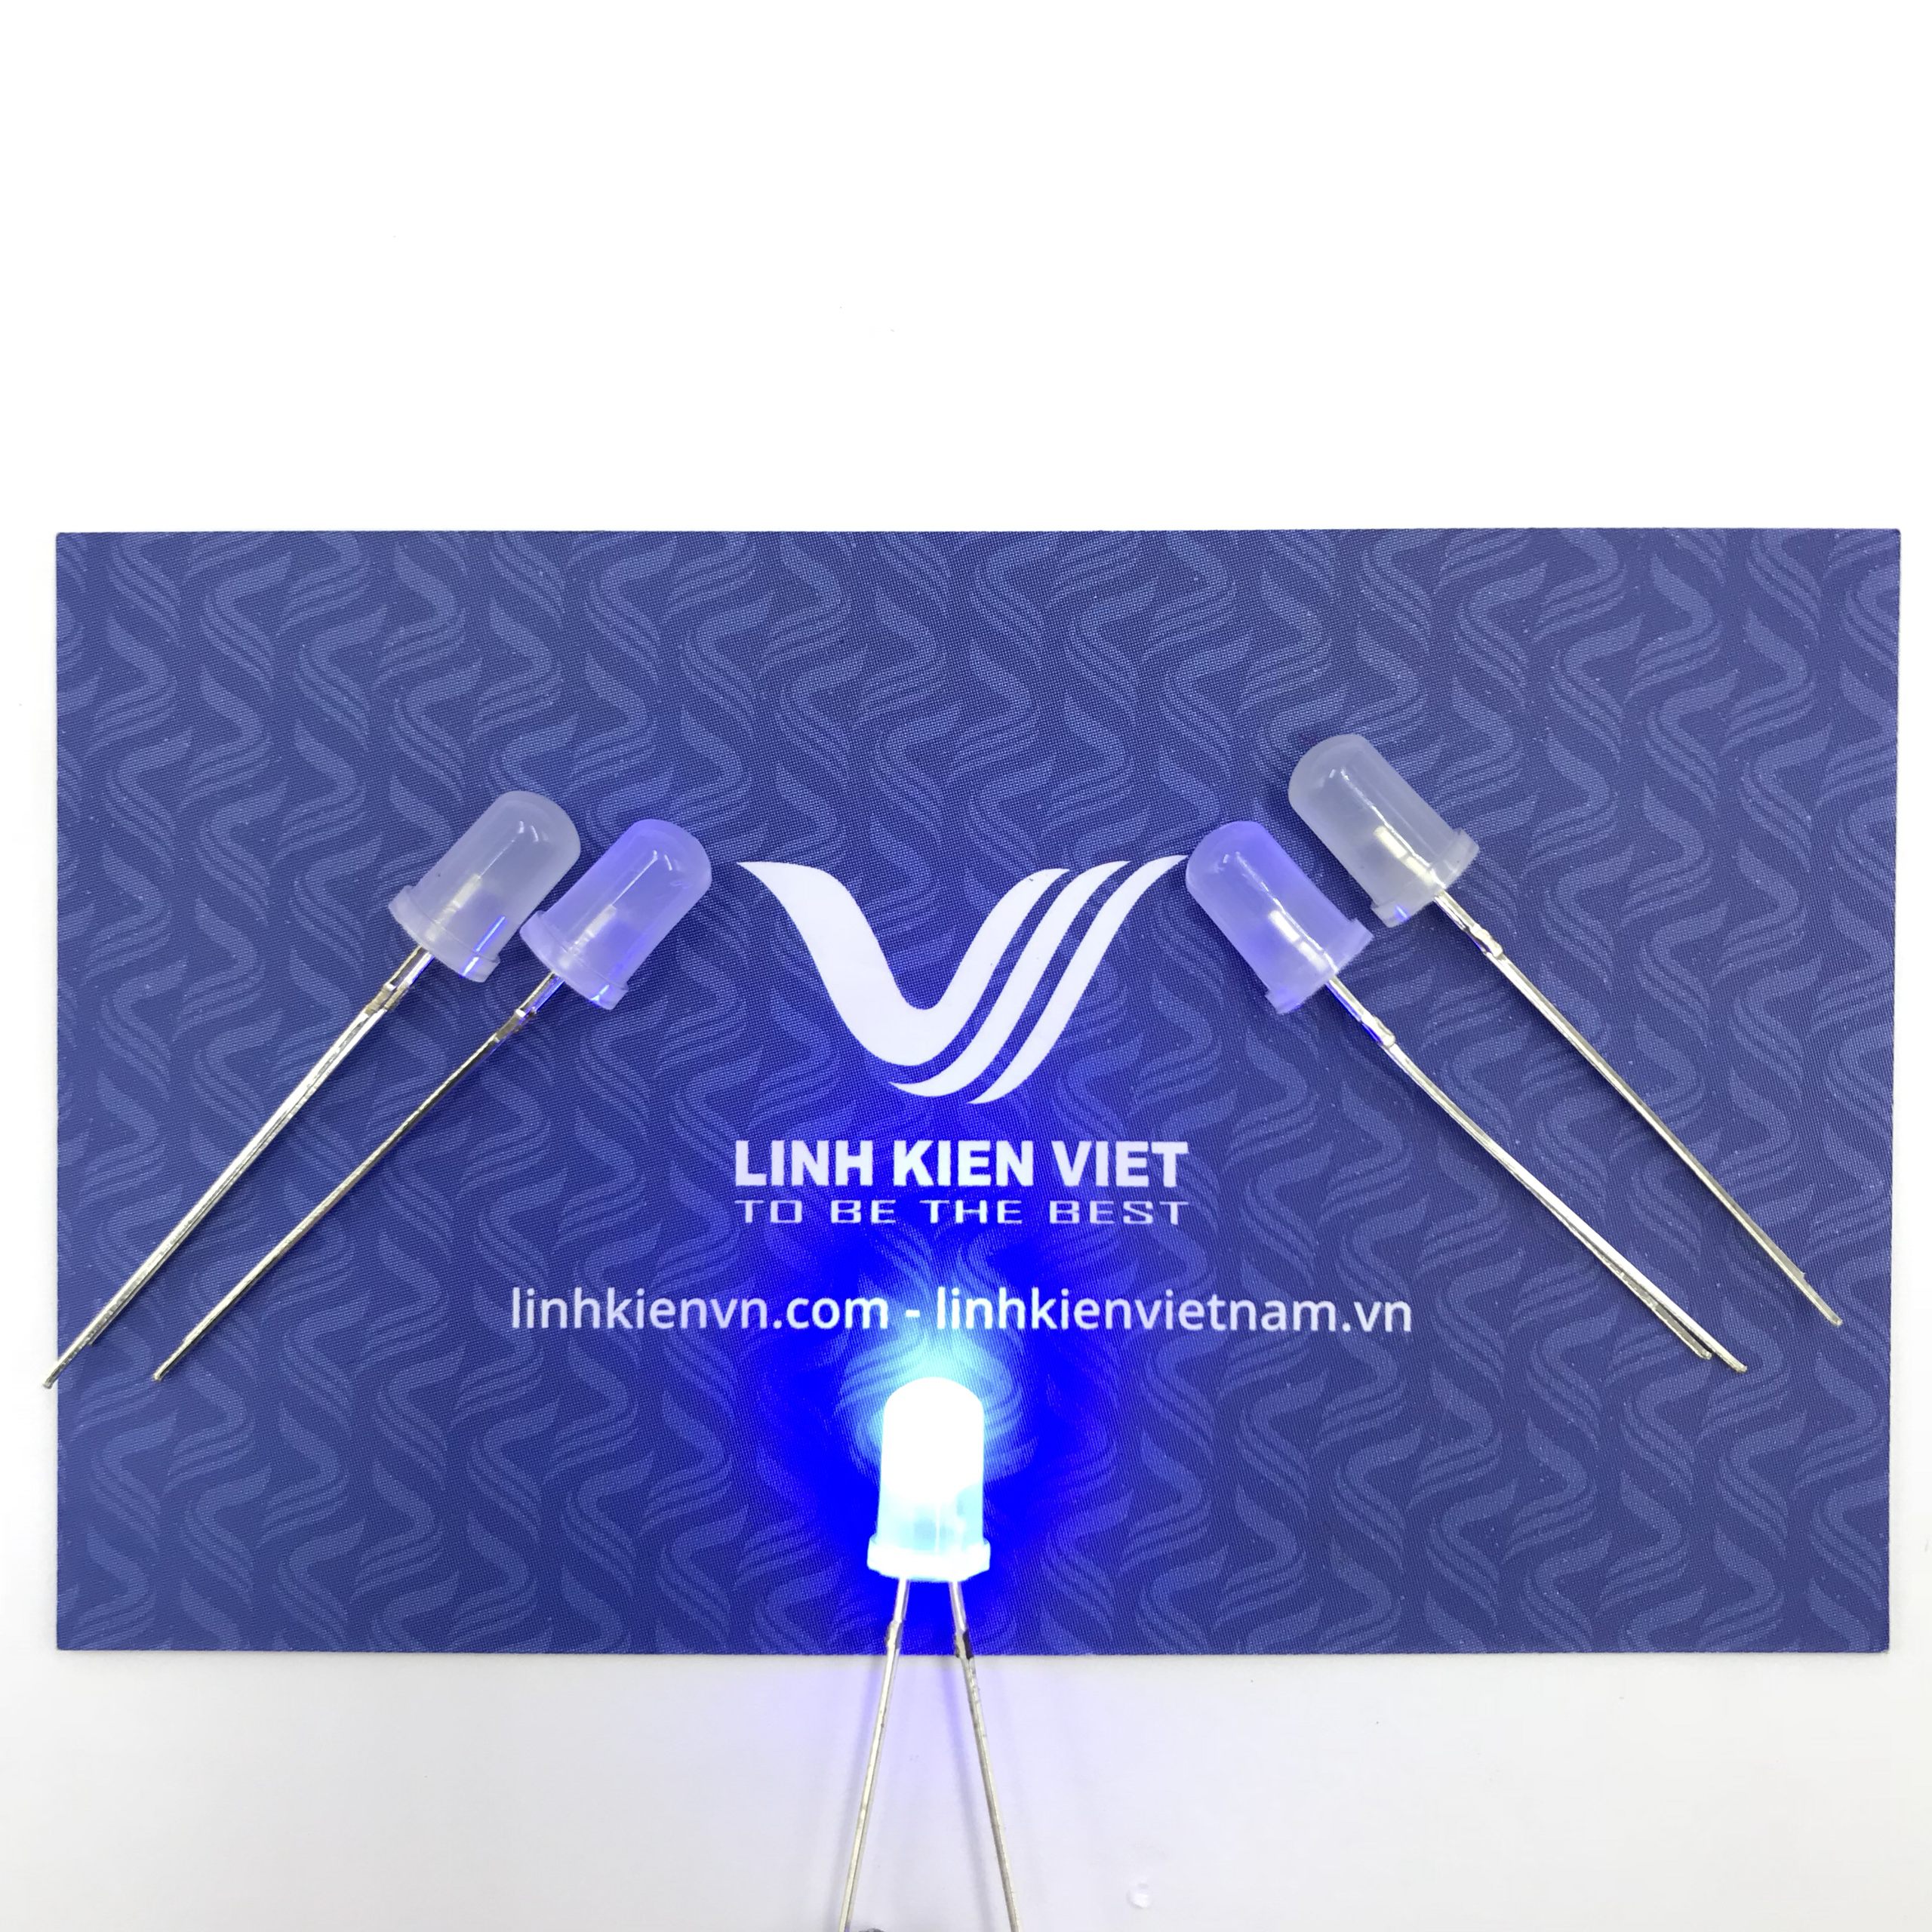 Led siêu sáng đục 5mm mầu xanh dương (10 chiếc) - A4H4 (KA2H1)